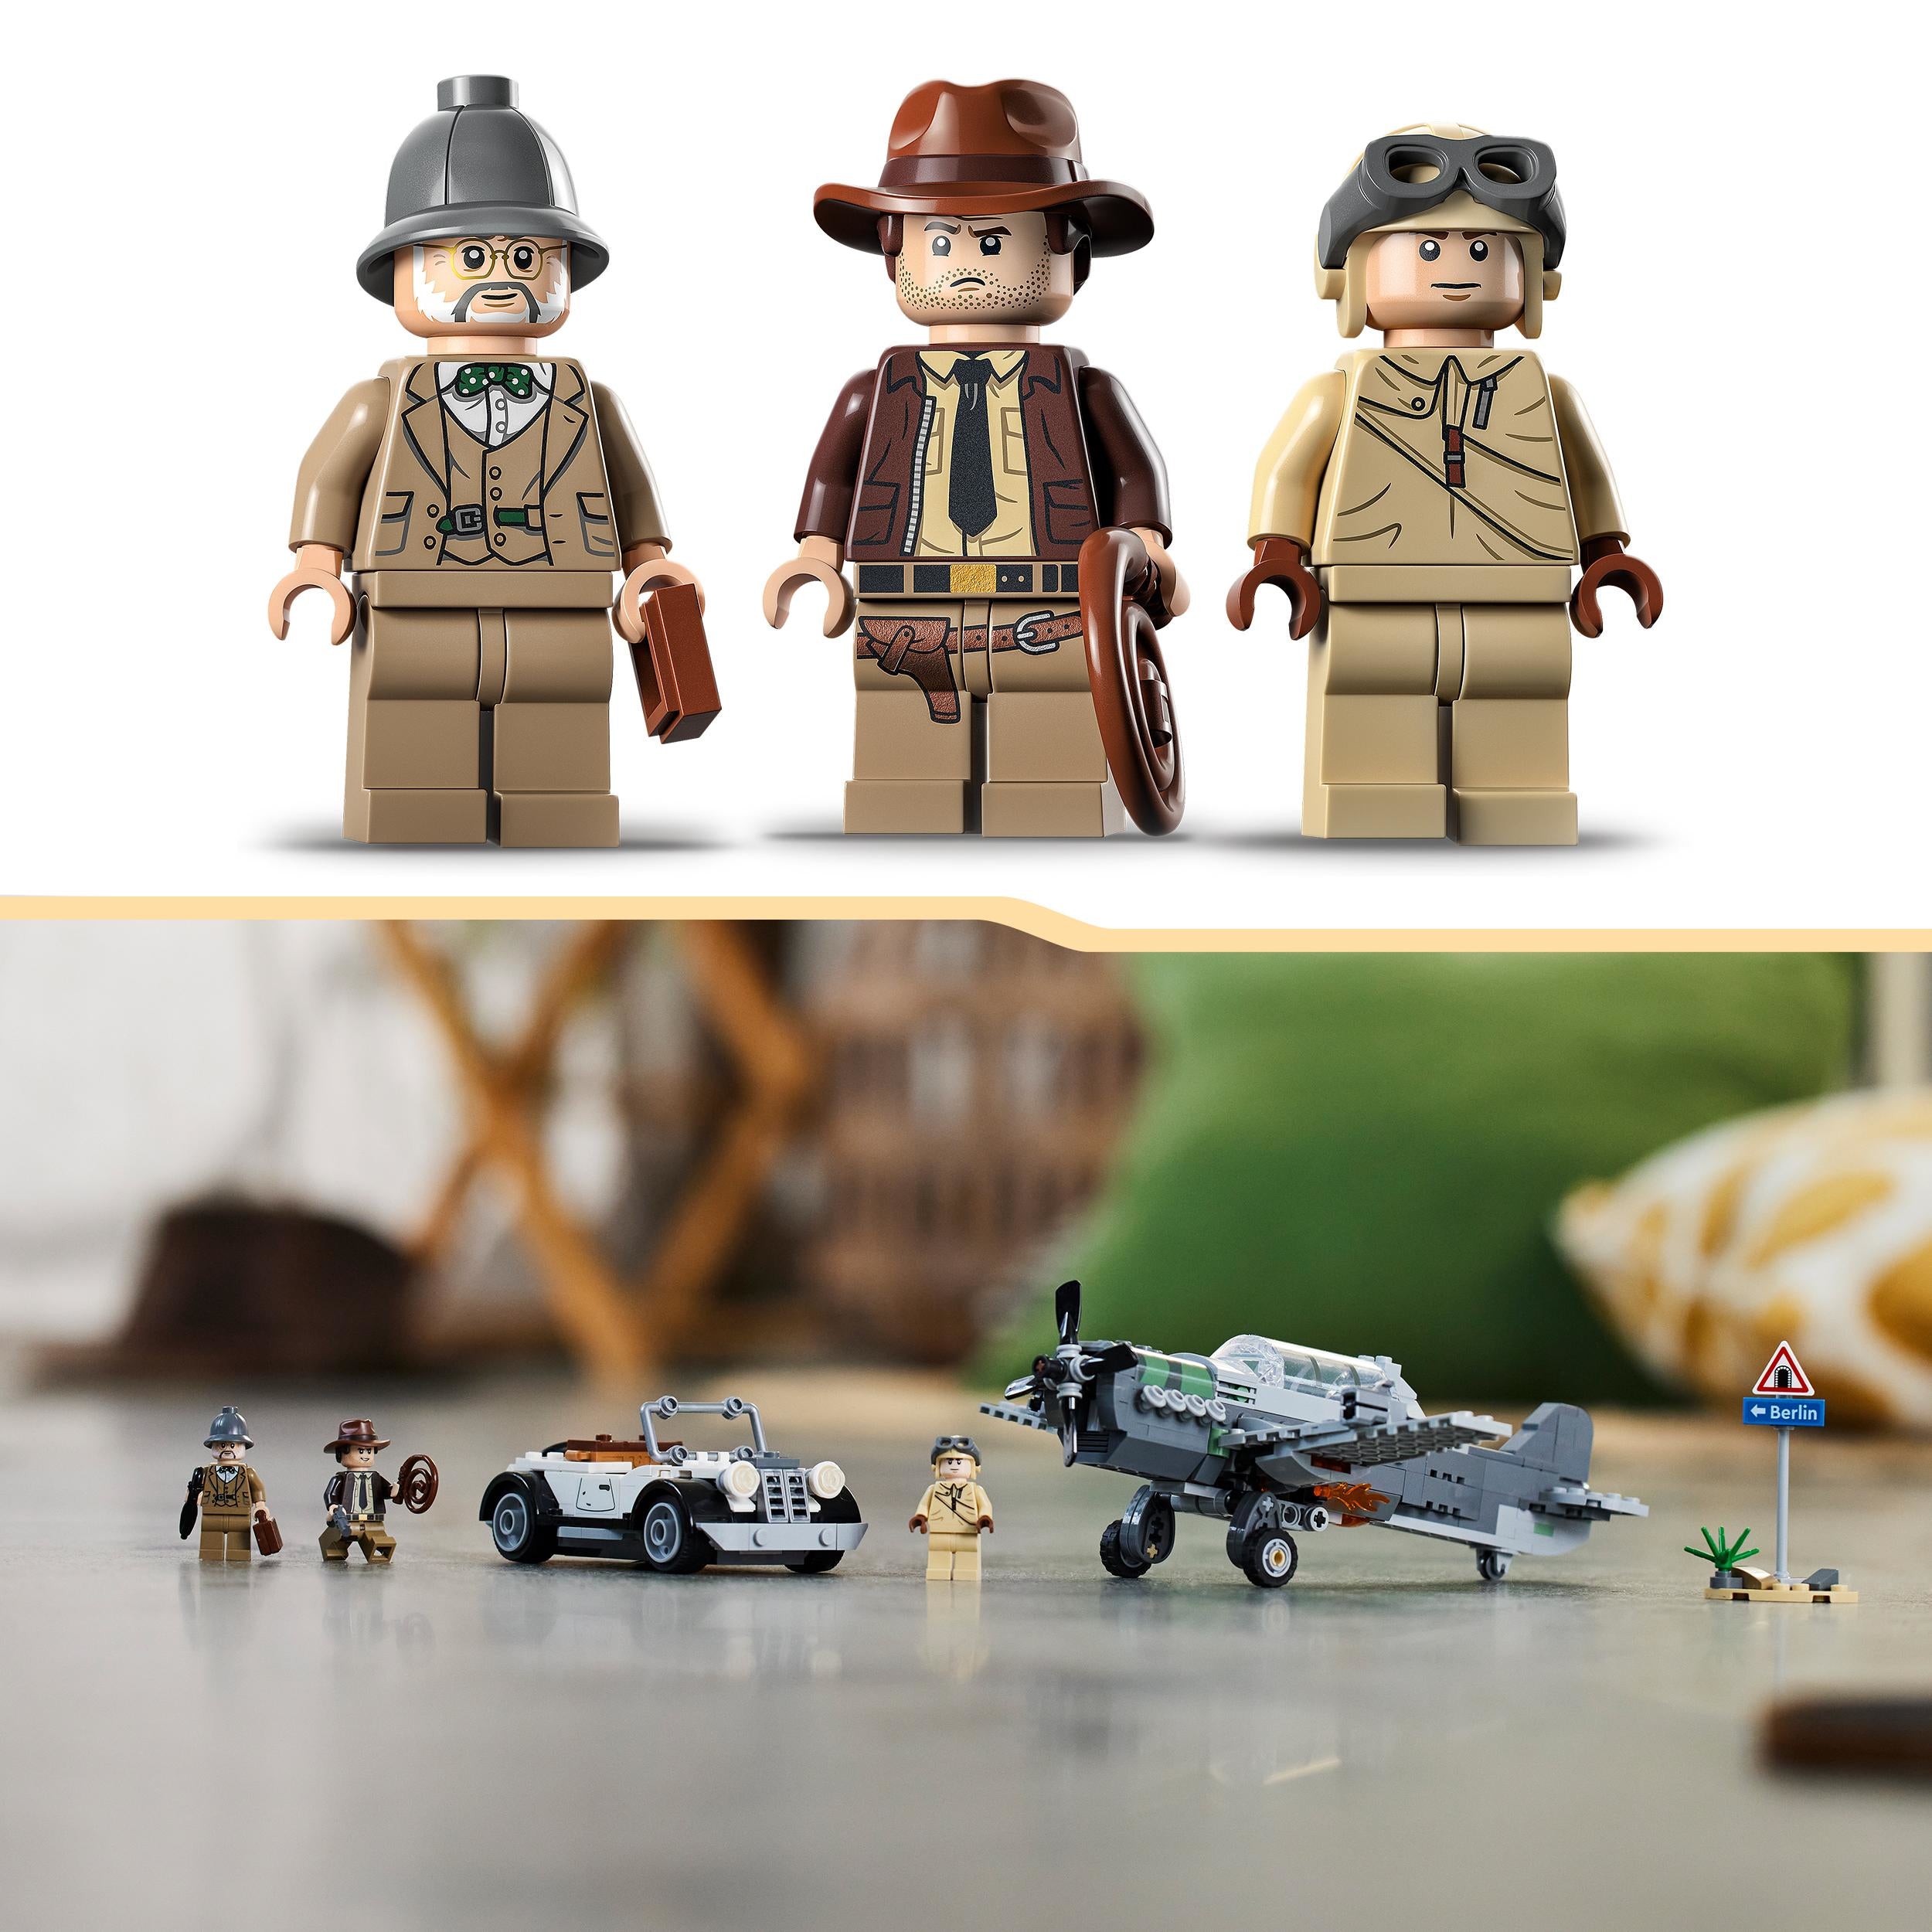 77012 - LEGO Indiana Jones - L'inseguimento dell'aereo a elica